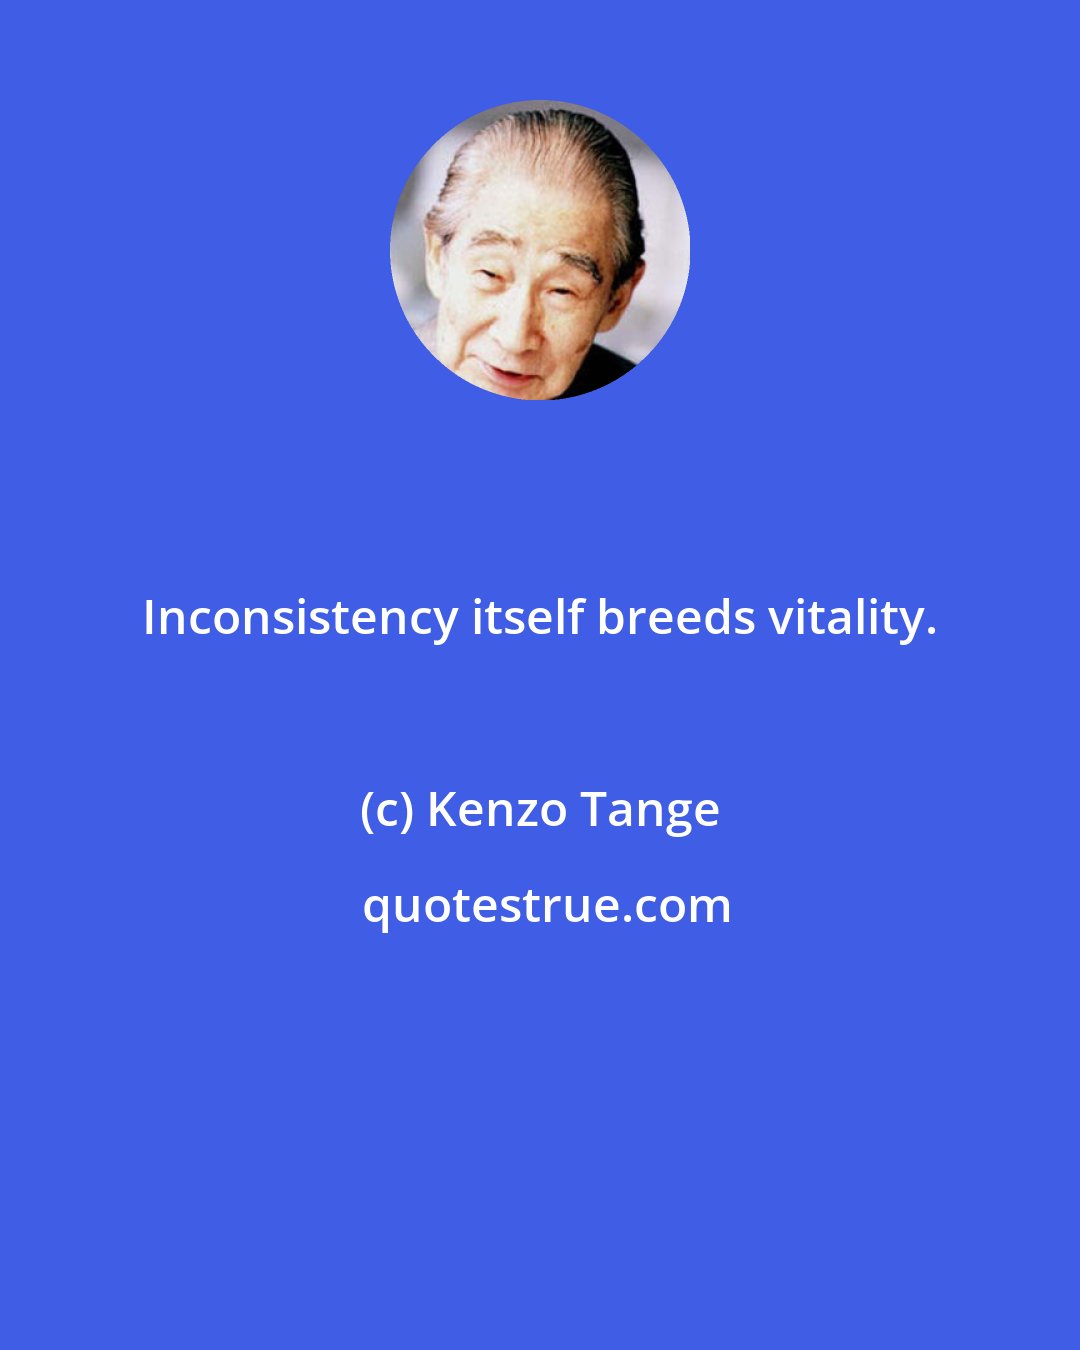 Kenzo Tange: Inconsistency itself breeds vitality.